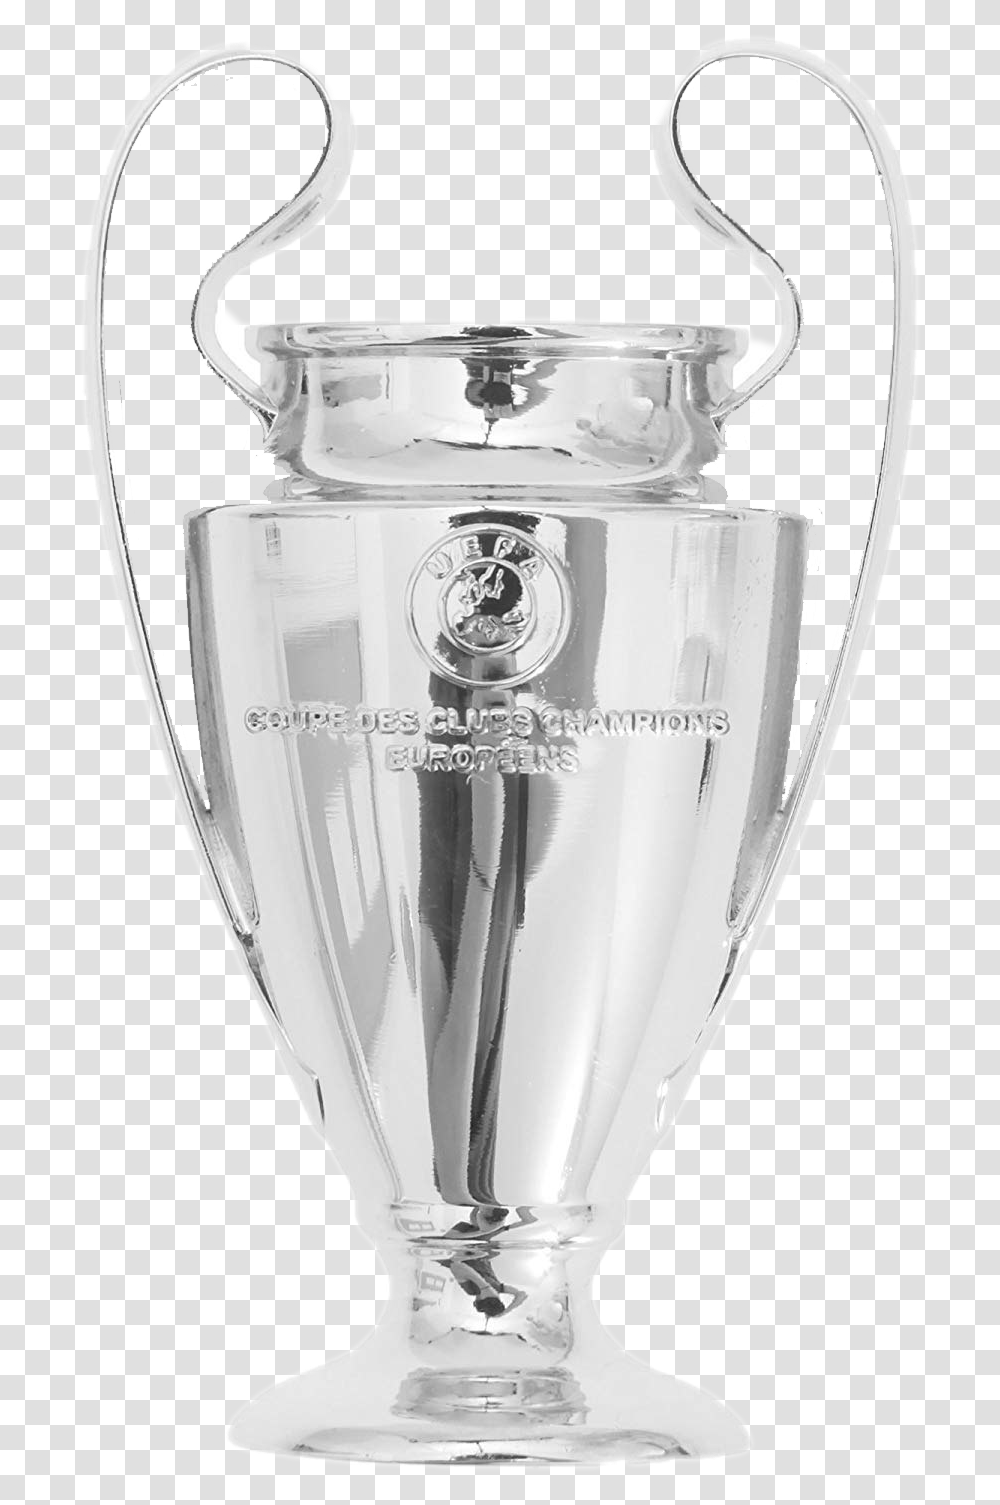 Uefa Champions League Trophy Image Trophy Uefa Champions League, Mixer, Appliance Transparent Png